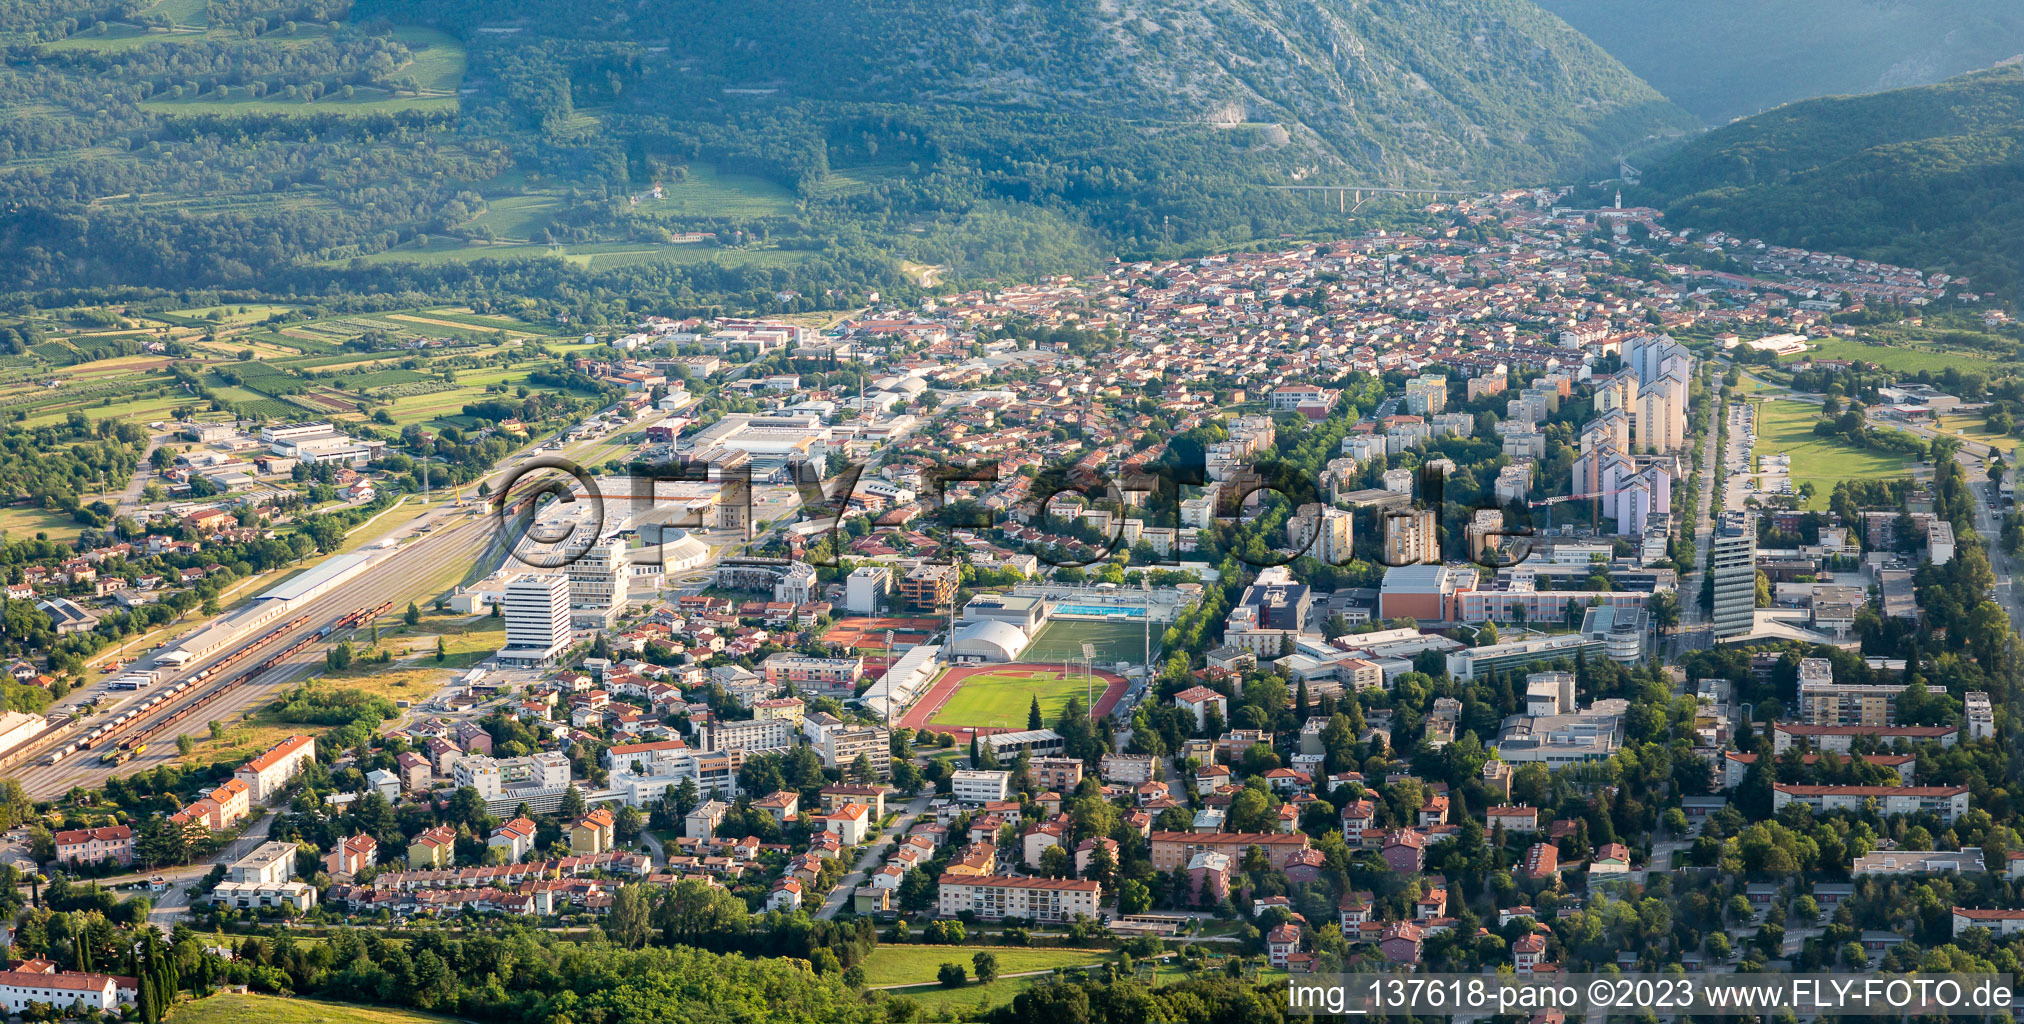 Luftbild von Innenstadt von Süden in Nova Gorica, Slowenien